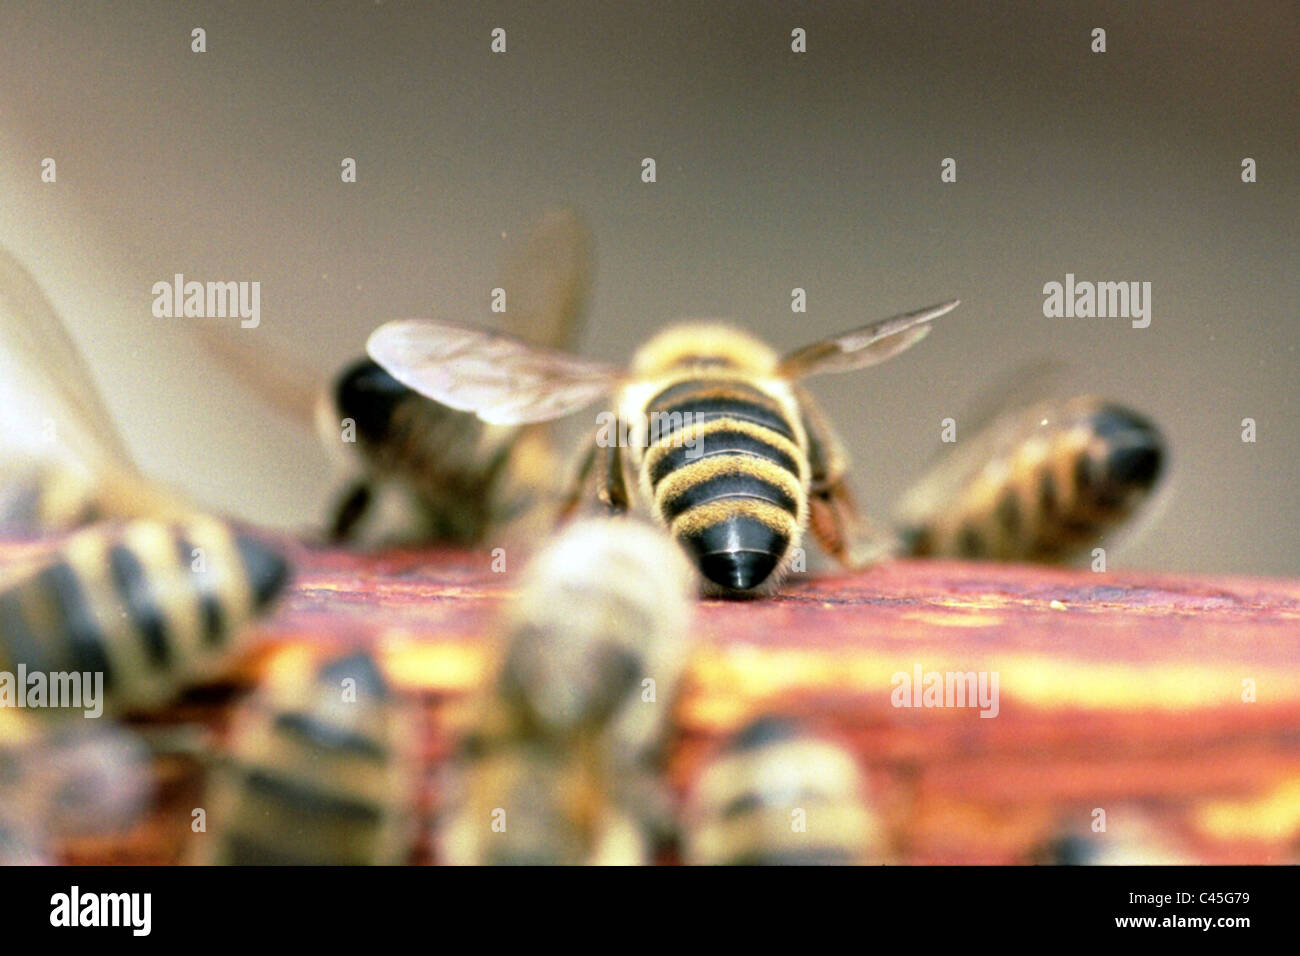 Questa immagine è stata scattata in estate quando le api di ali erano mangiati dai parassiti. Foto Stock